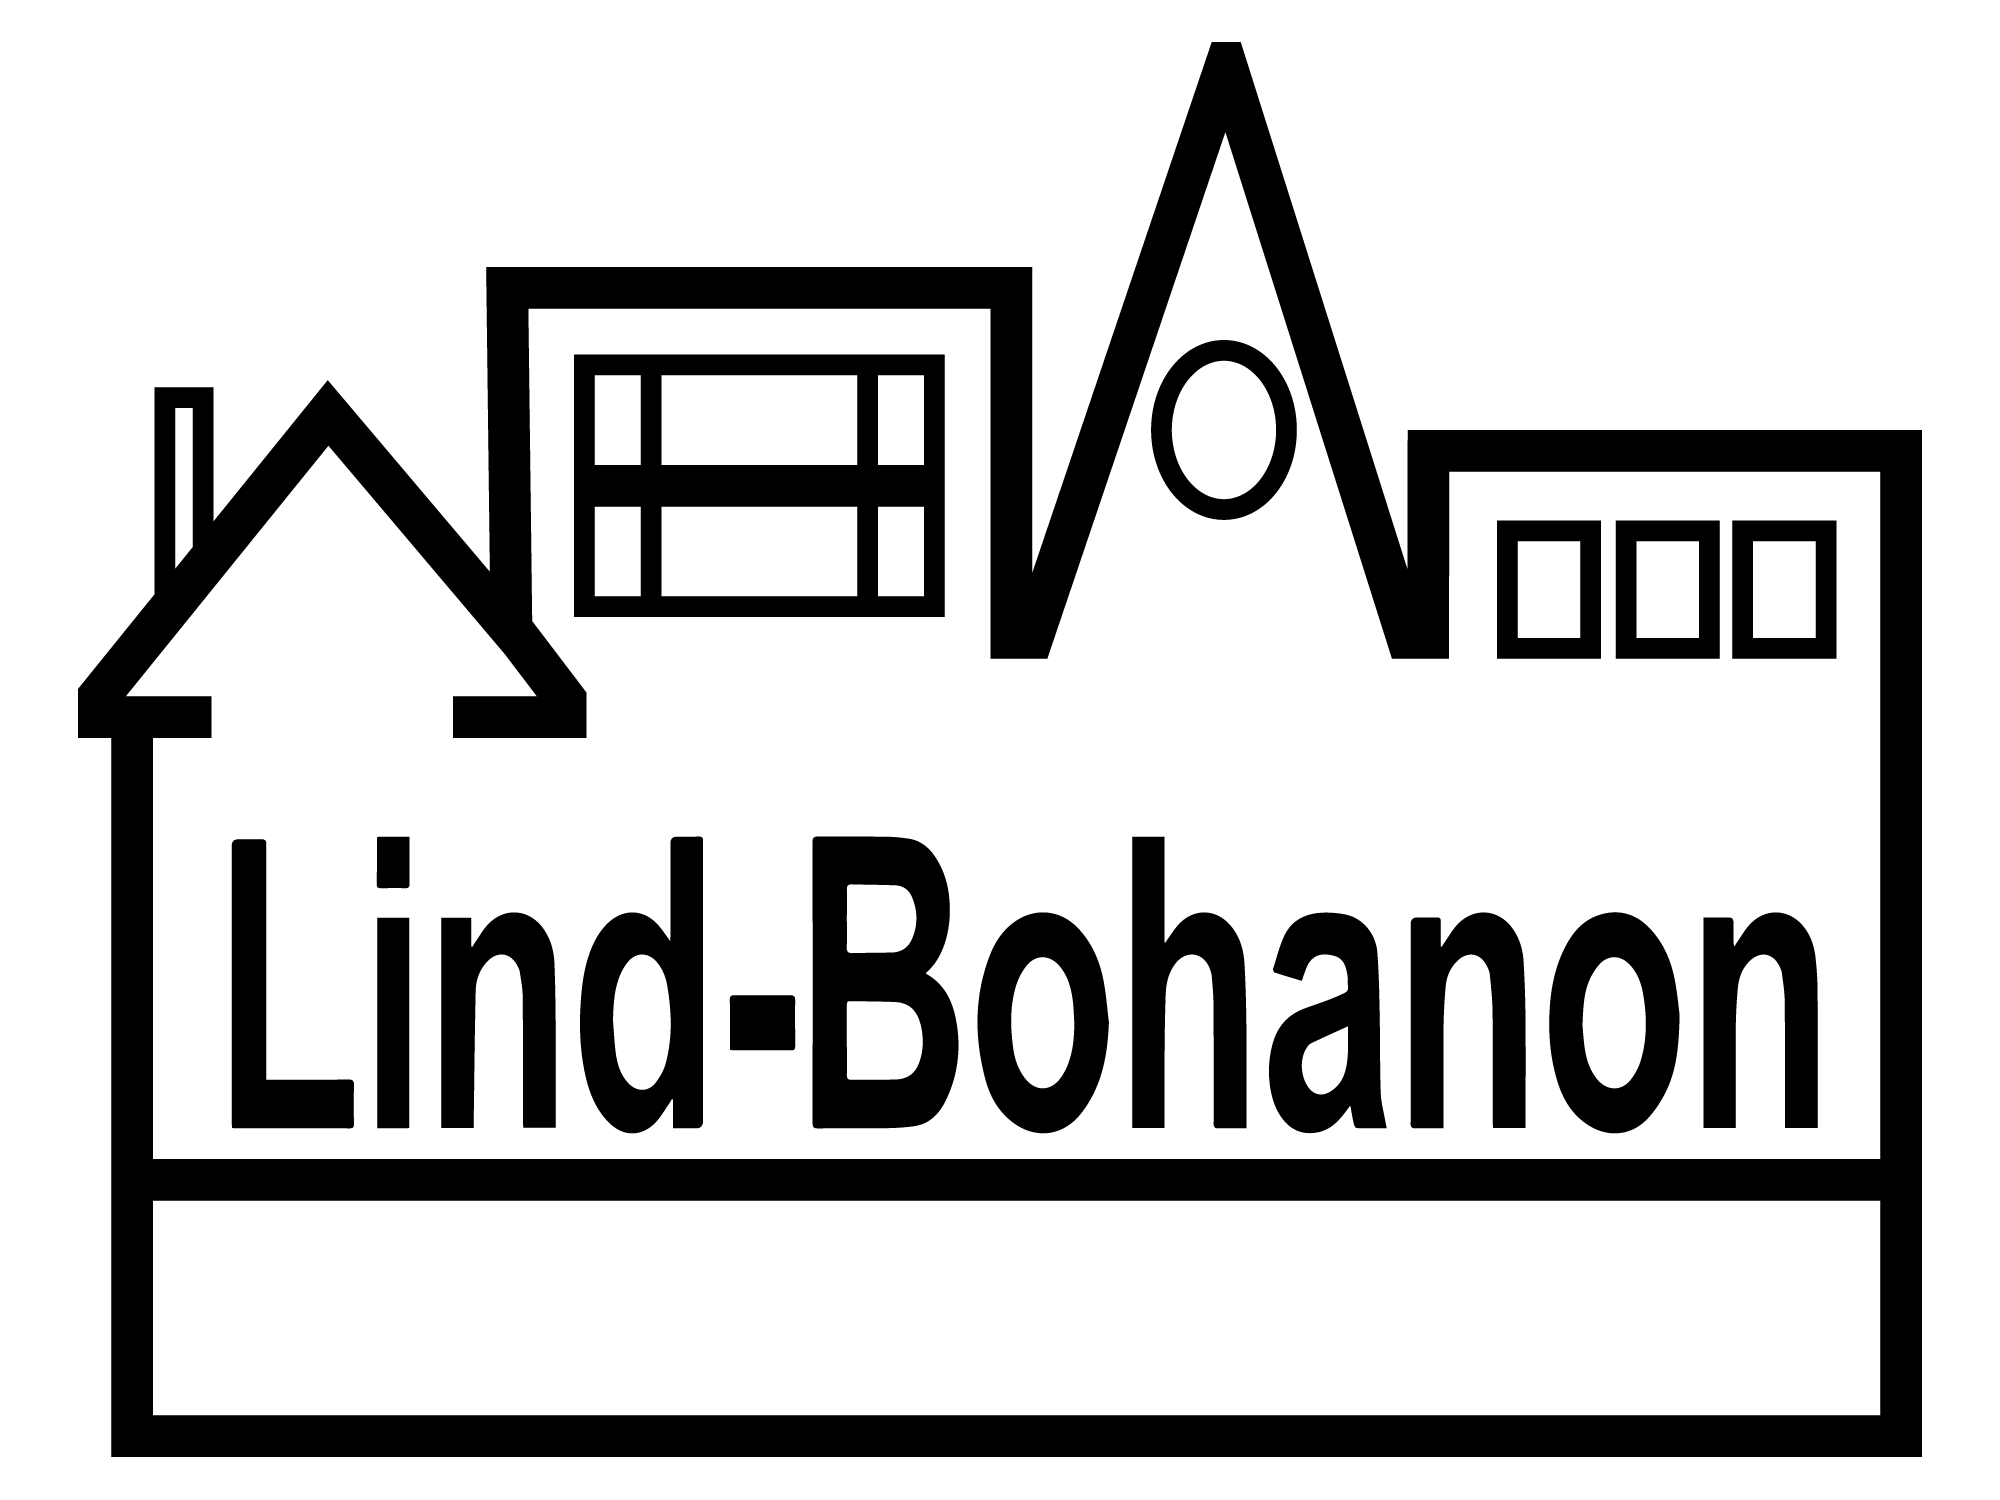 Lind-Bohanon logo set: black logo with only Lind-Bohanon name